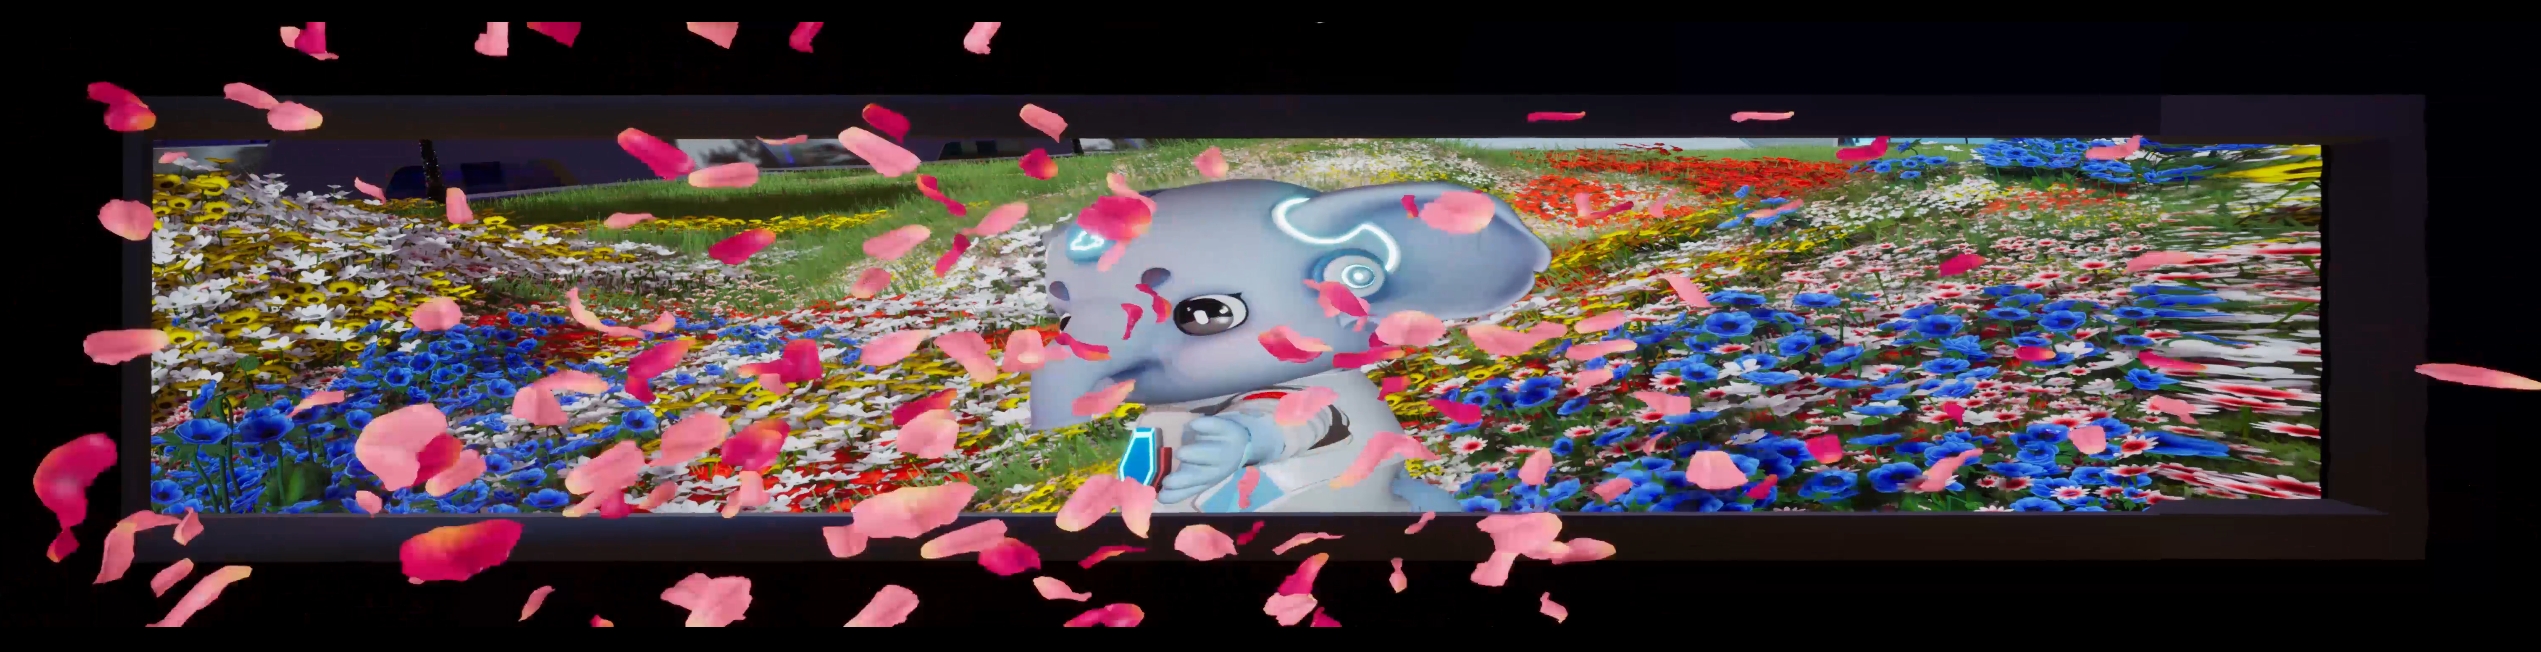 云南昆明南博会裸眼3D大屏三维宣传视频设计与制作三维动画